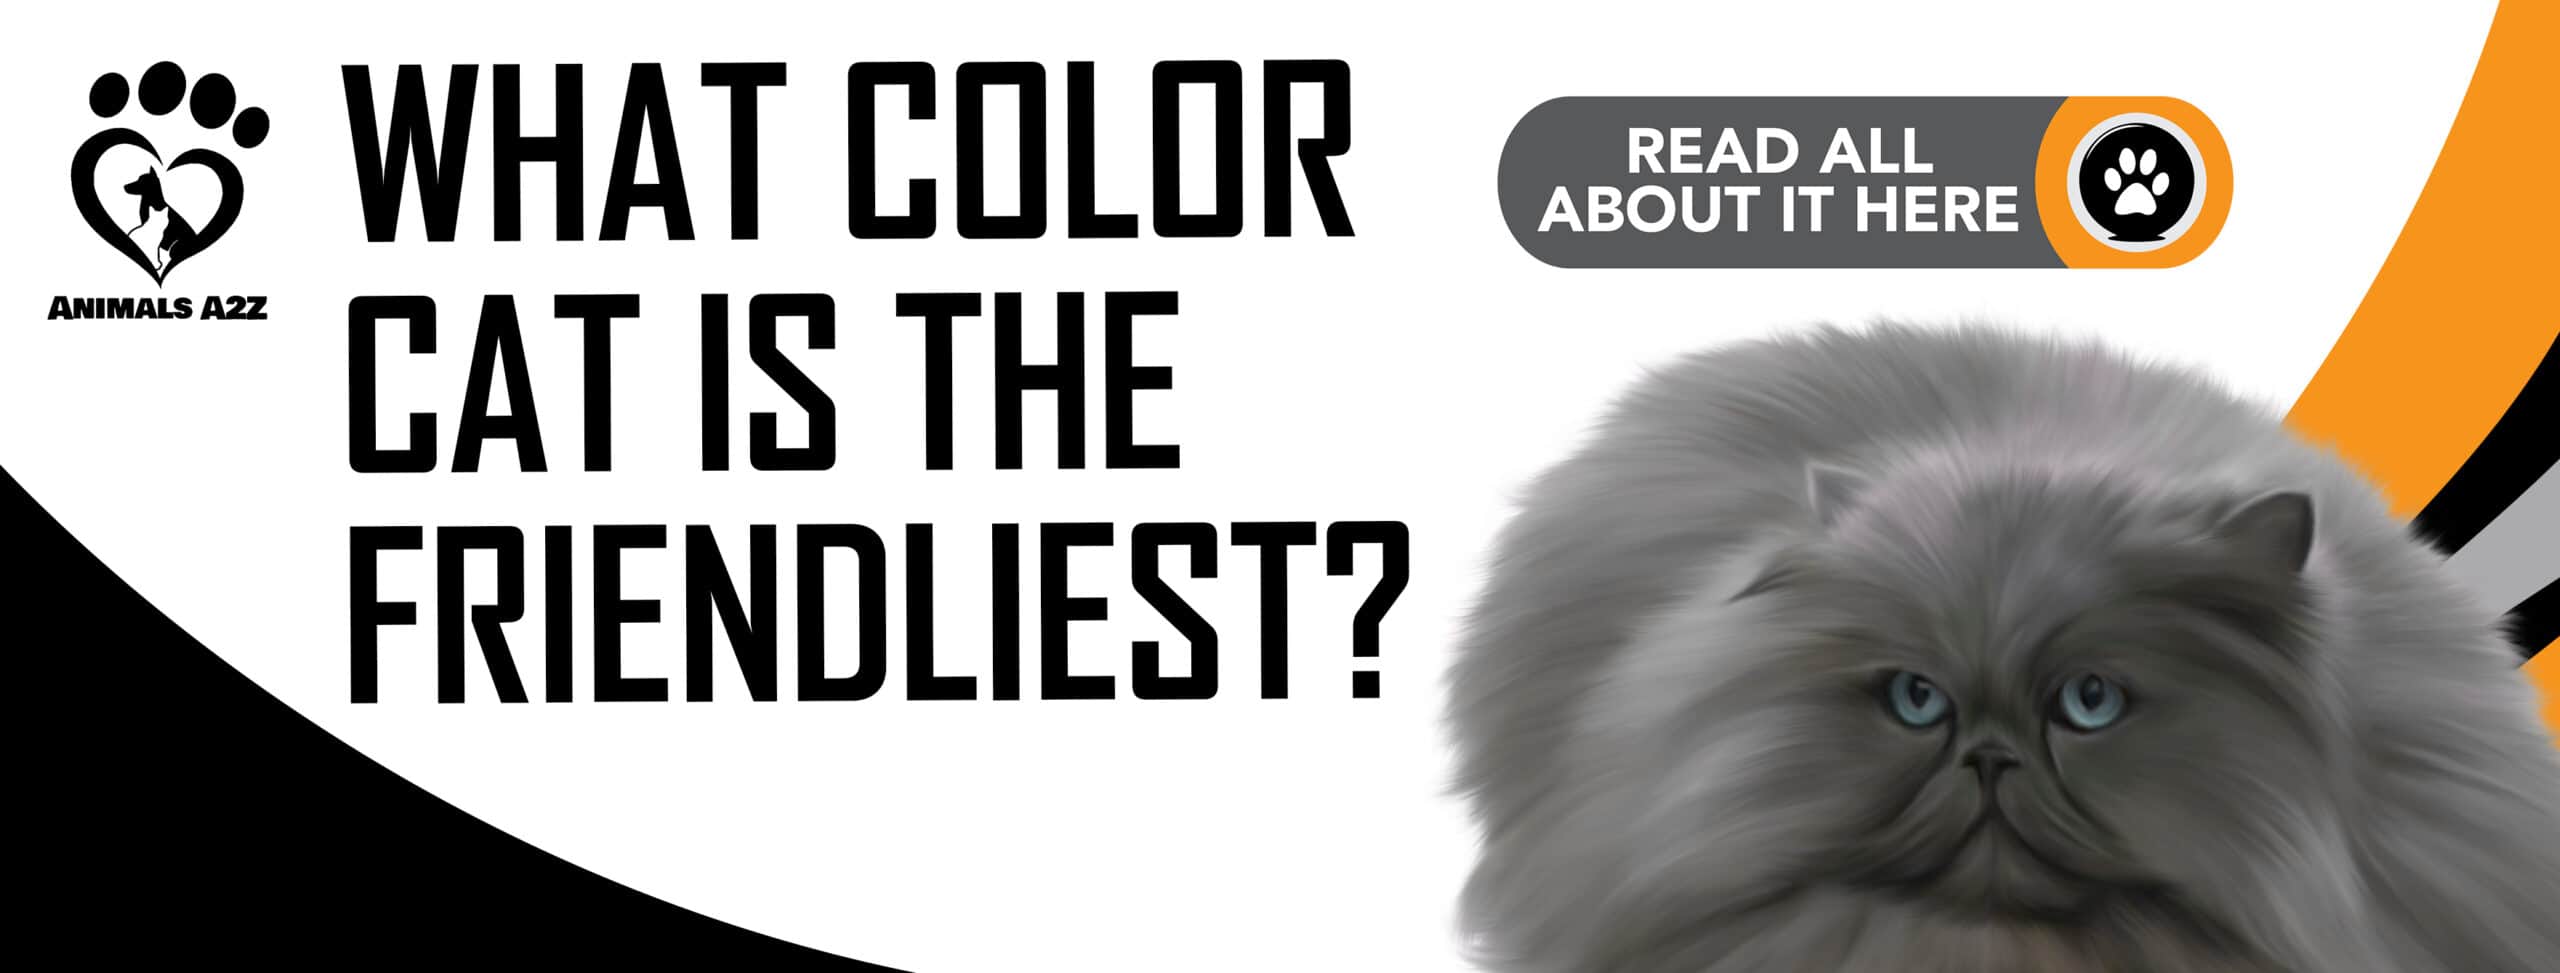 De quelle couleur est le chat le plus gentil ?